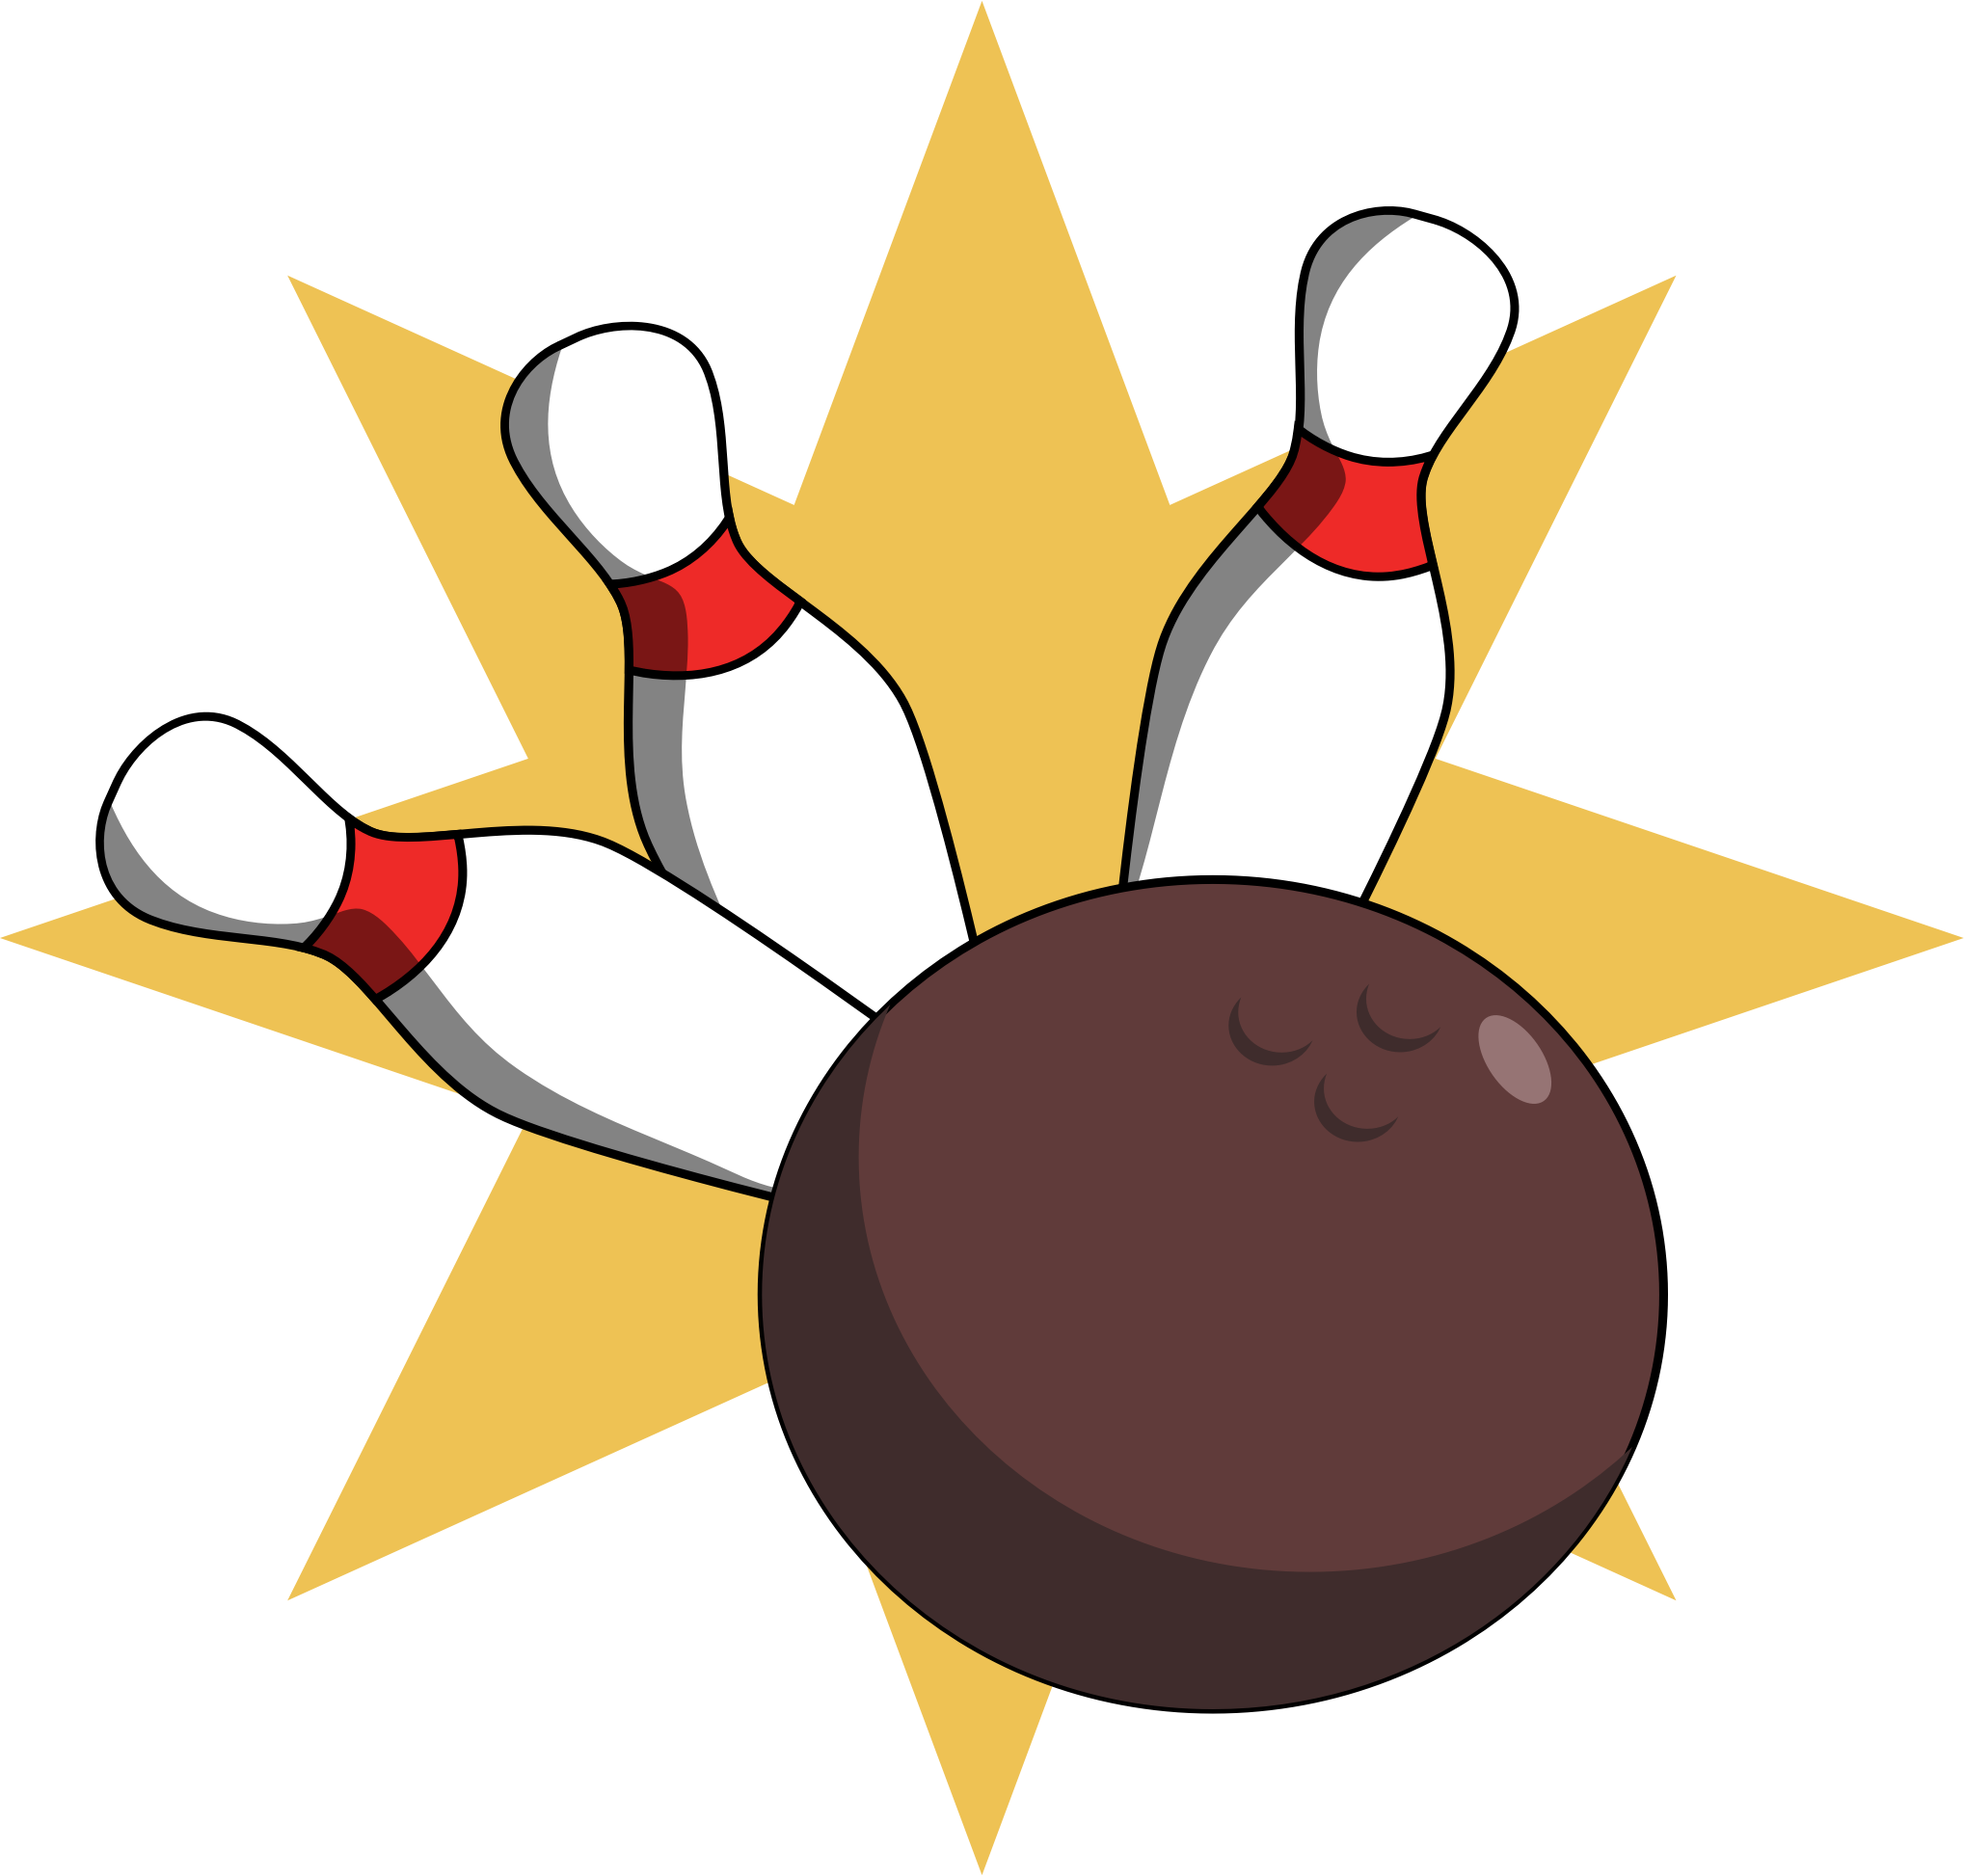 bowling ball and pins vector